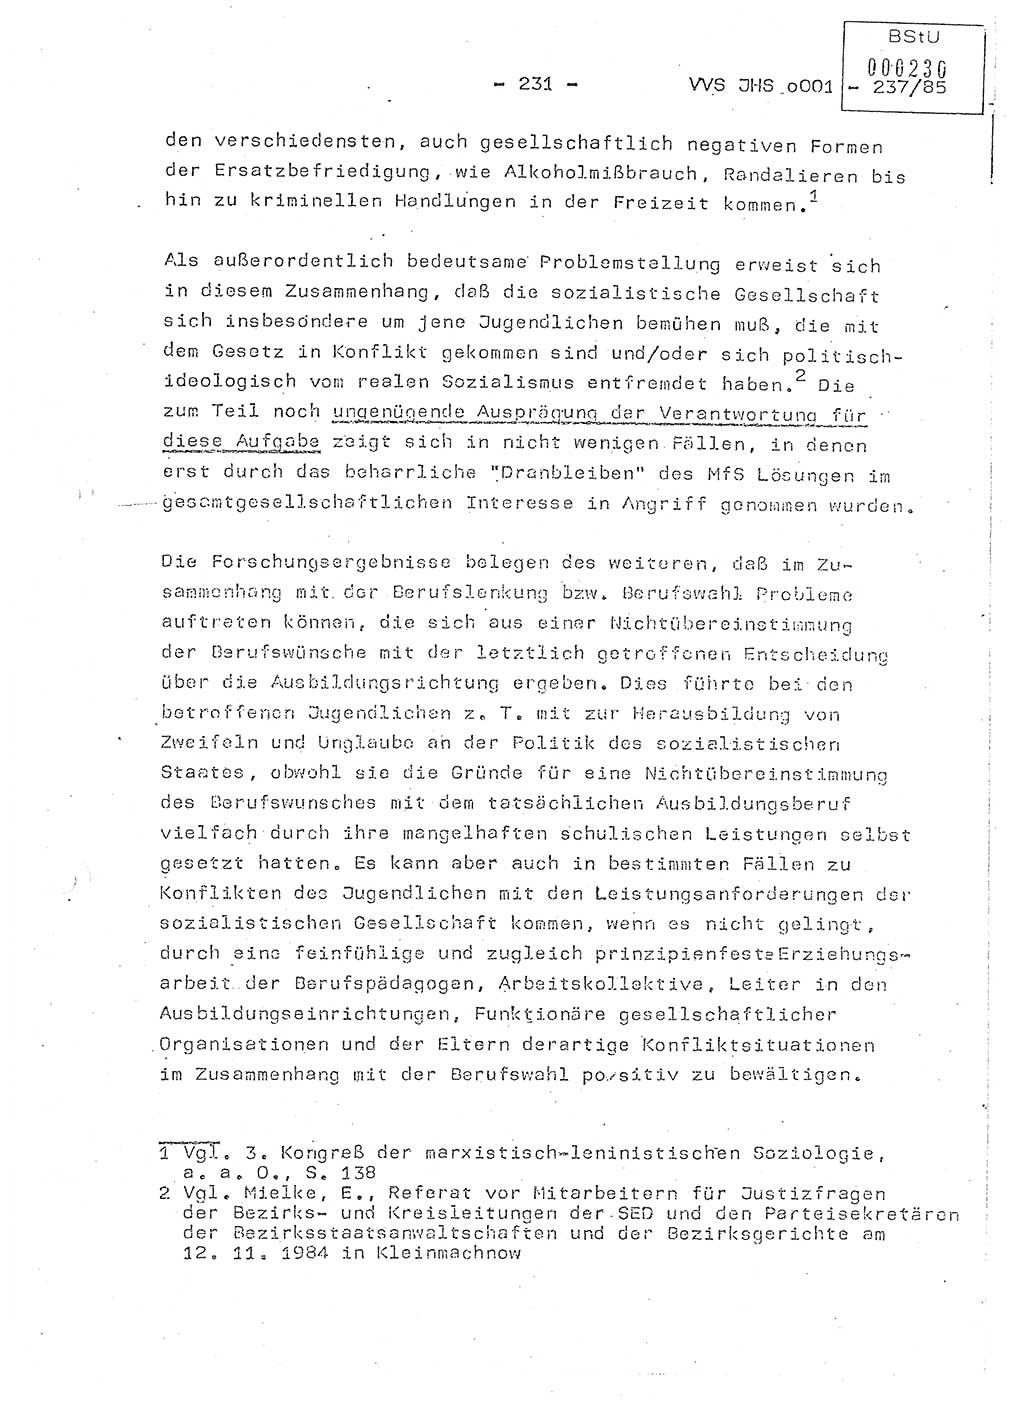 Dissertation Oberstleutnant Peter Jakulski (JHS), Oberstleutnat Christian Rudolph (HA Ⅸ), Major Horst Böttger (ZMD), Major Wolfgang Grüneberg (JHS), Major Albert Meutsch (JHS), Ministerium für Staatssicherheit (MfS) [Deutsche Demokratische Republik (DDR)], Juristische Hochschule (JHS), Vertrauliche Verschlußsache (VVS) o001-237/85, Potsdam 1985, Seite 231 (Diss. MfS DDR JHS VVS o001-237/85 1985, S. 231)